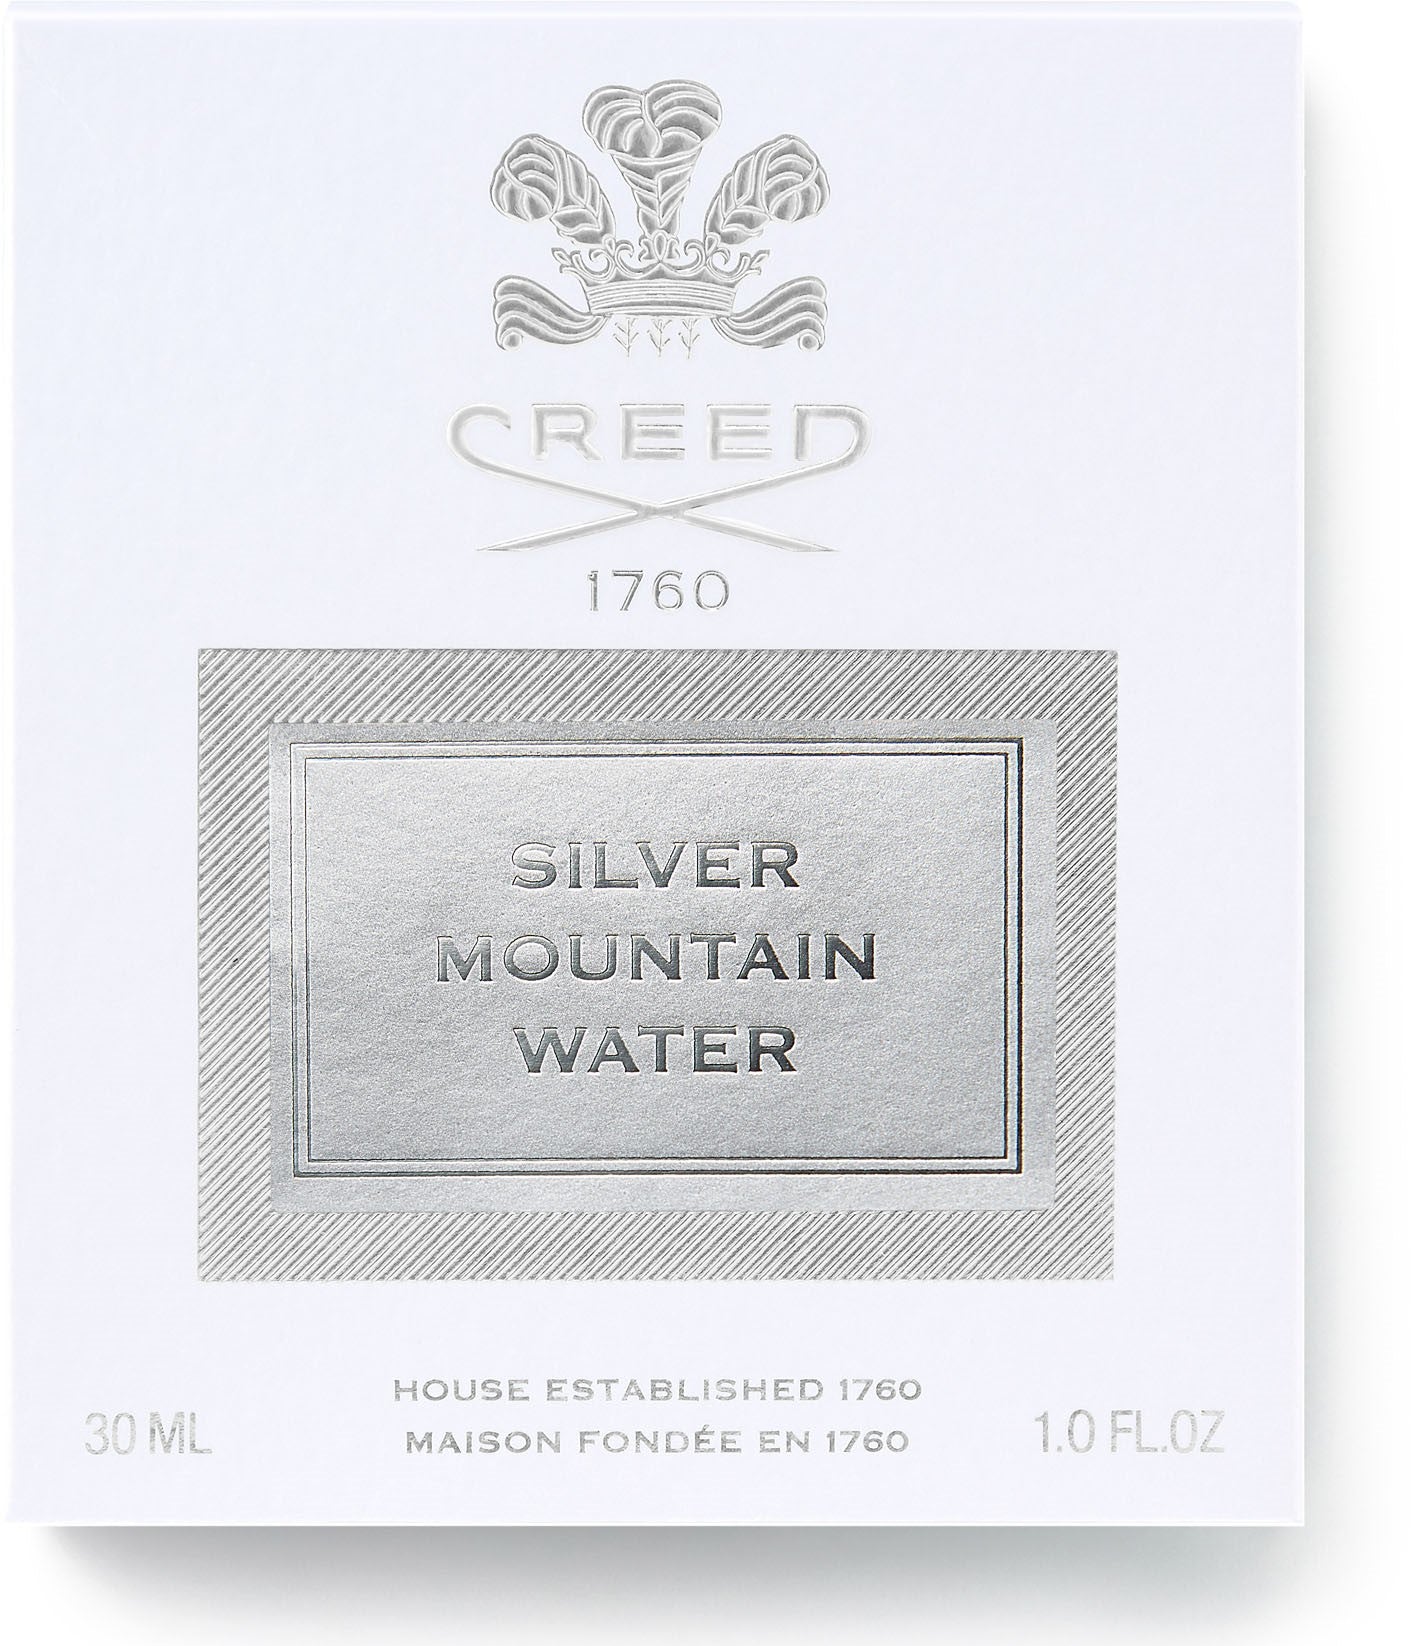 Silver Mount.Water - Milles. sprühen